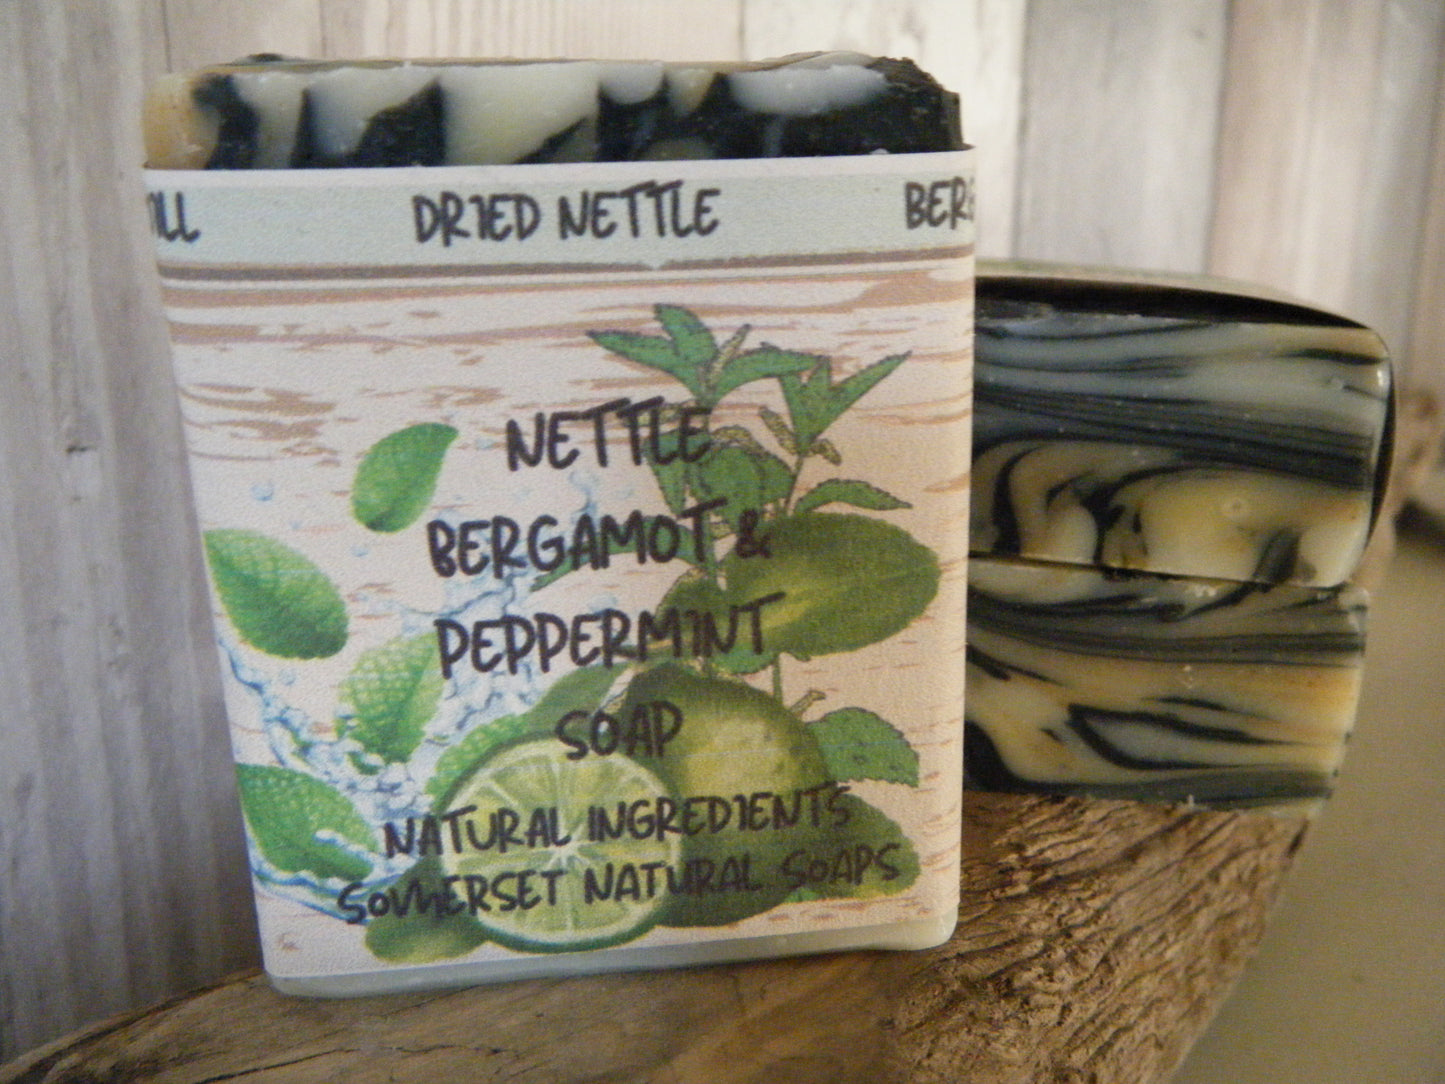 Nettle Pepermint & Bergamot Vegan Soap